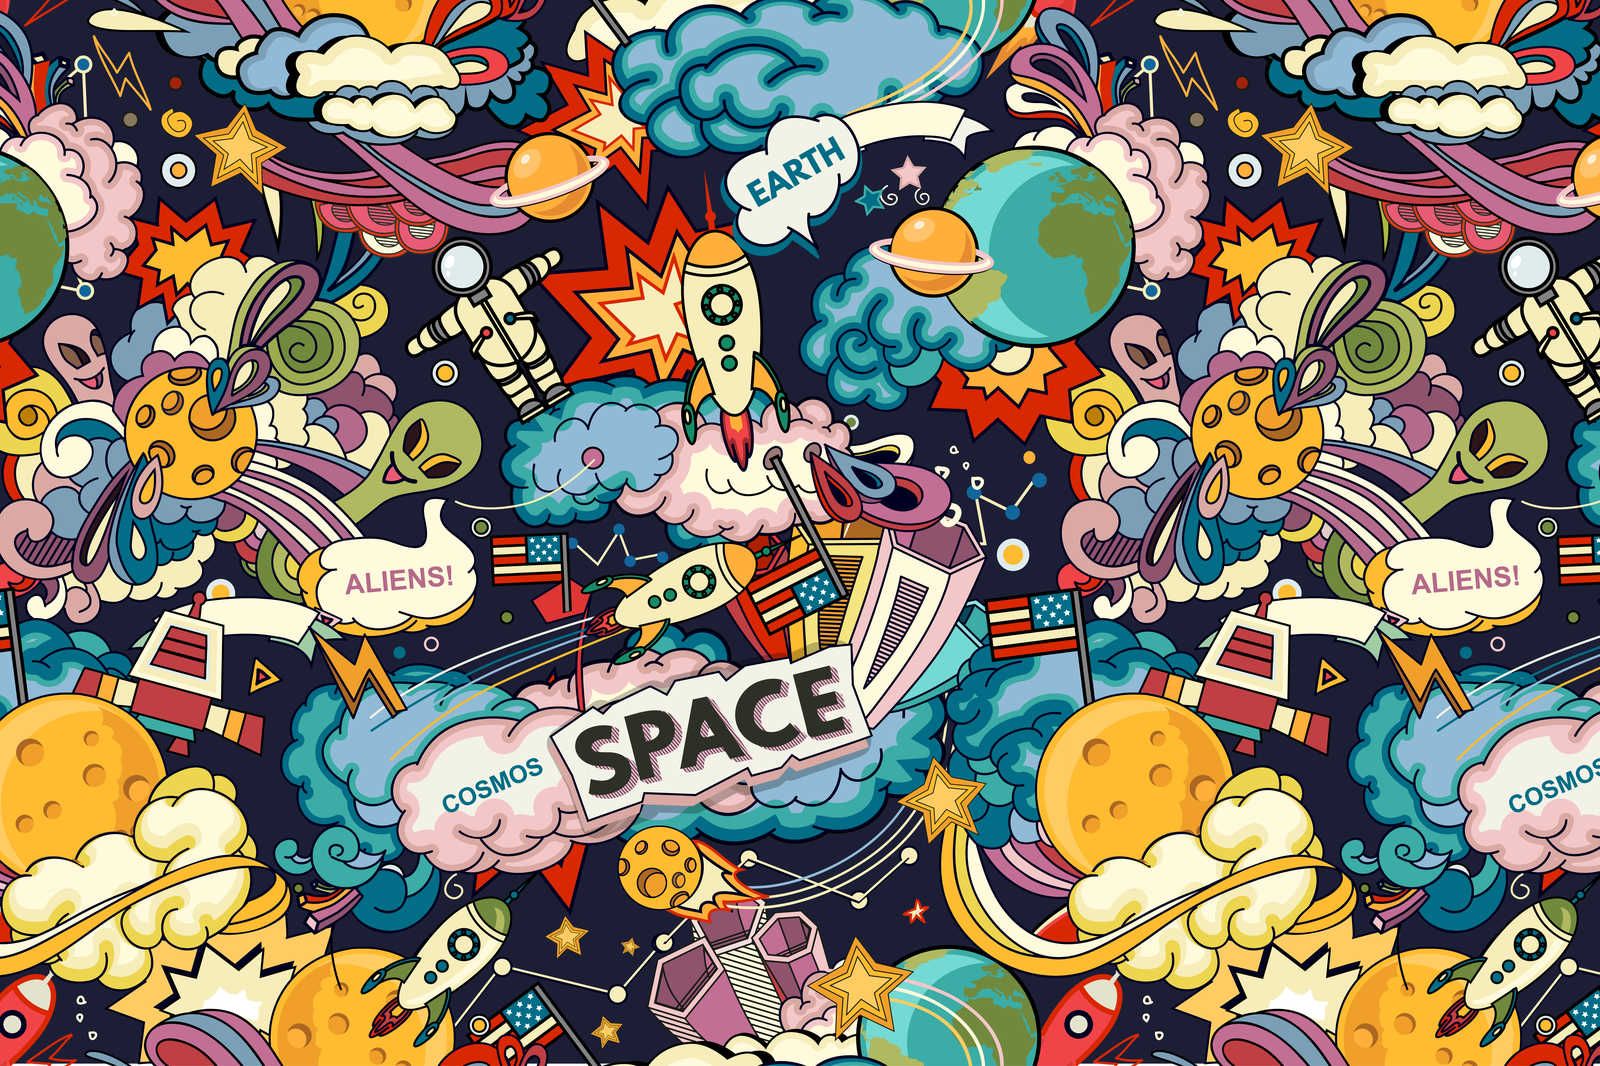             Toile Collage de l'univers dans le style bande dessinée - 120 cm x 80 cm
        